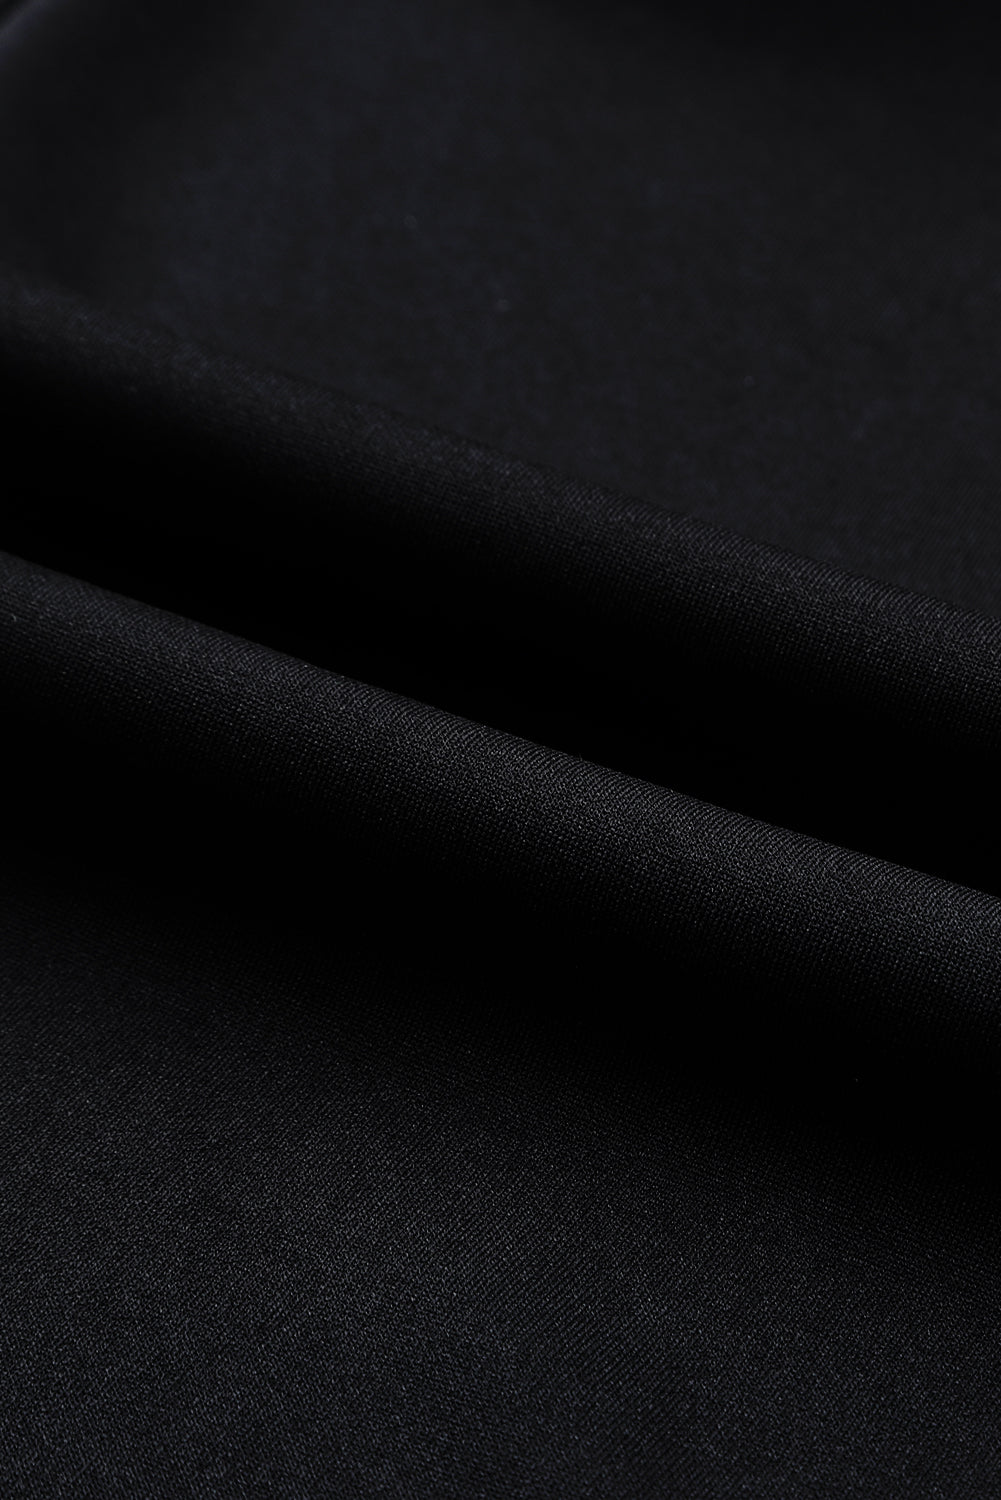 Črn enobarven širok kombinezon brez rokavov